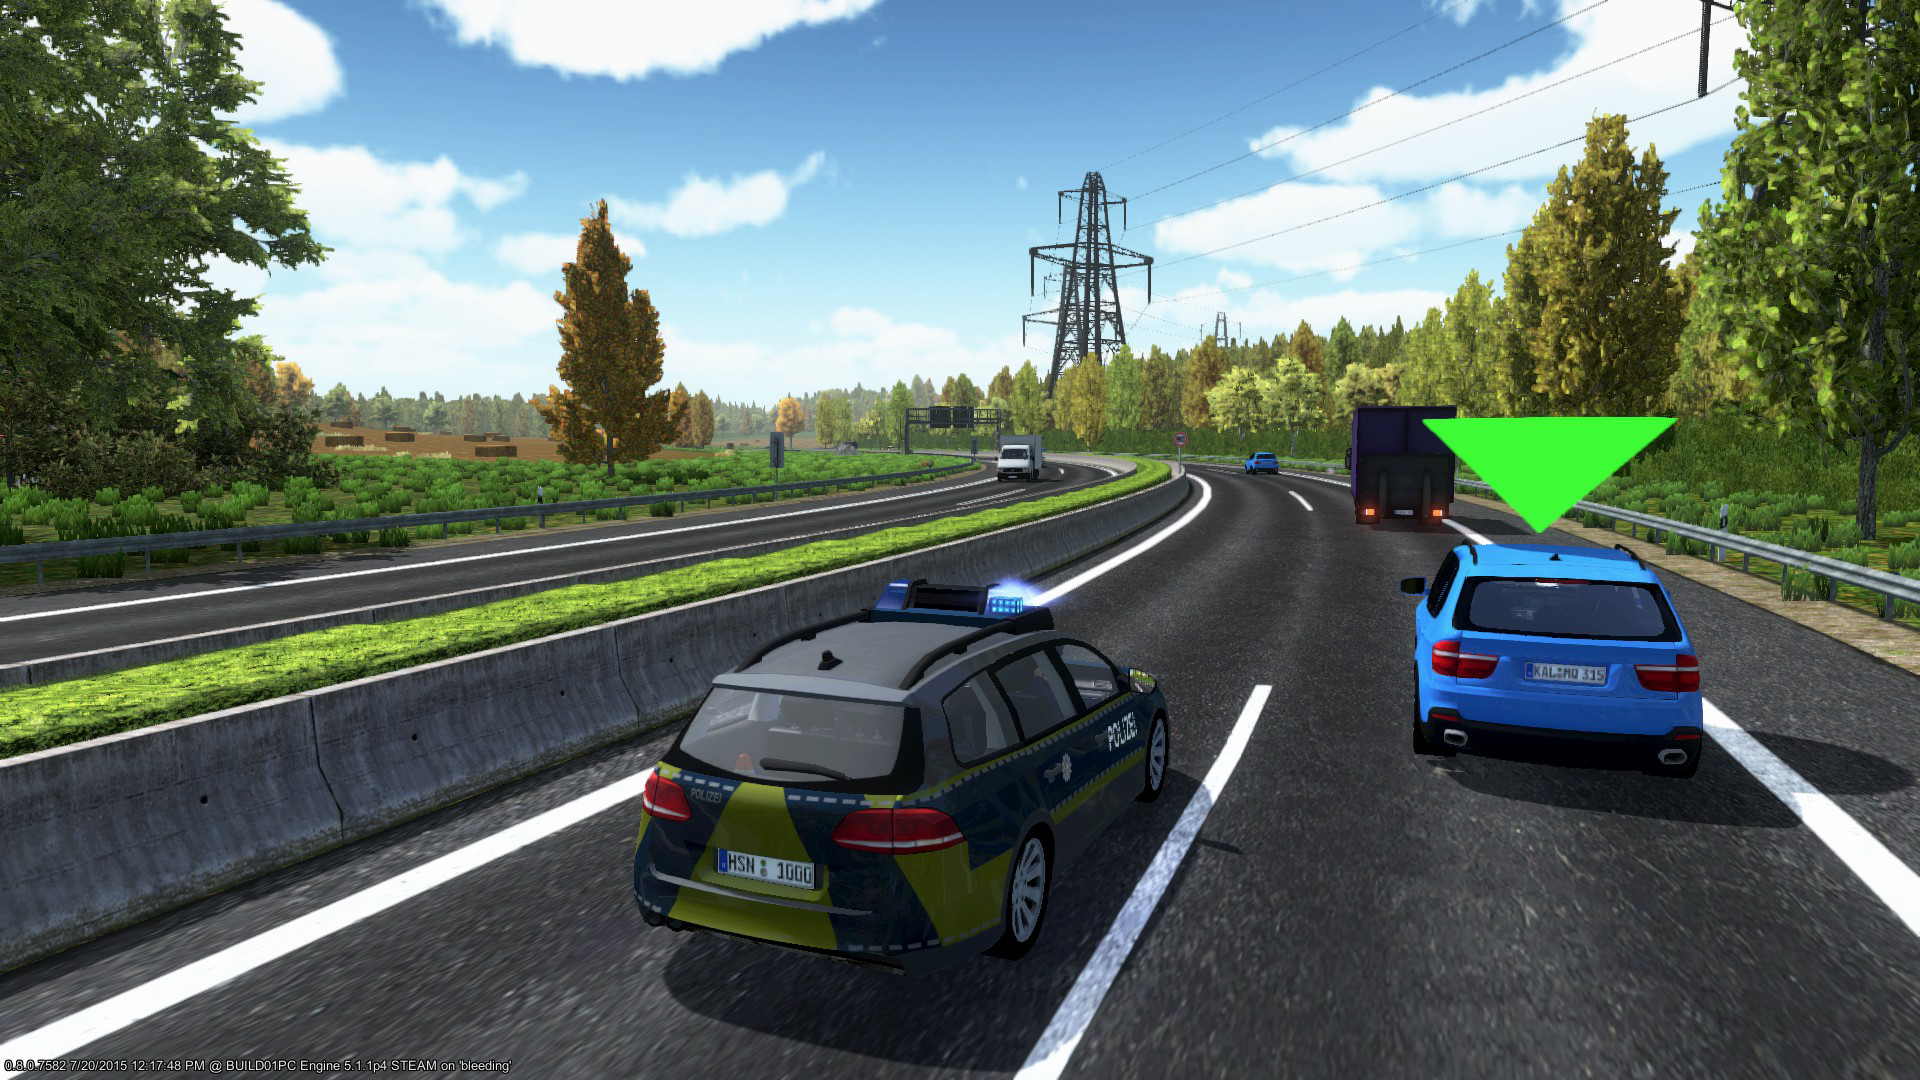 Police Simulator Autobahn on Steam